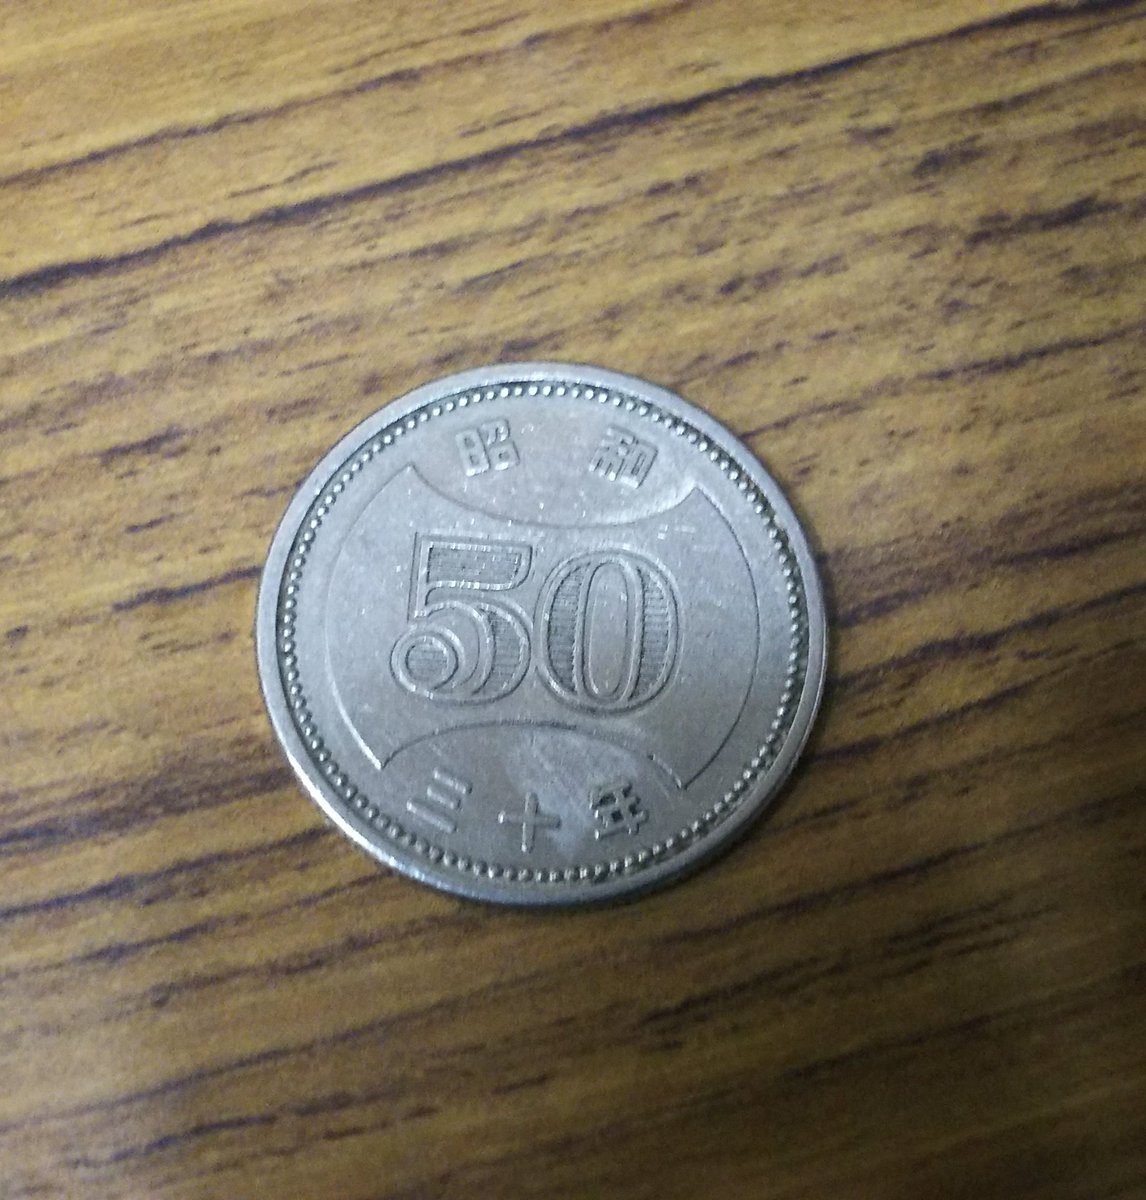 50円玉